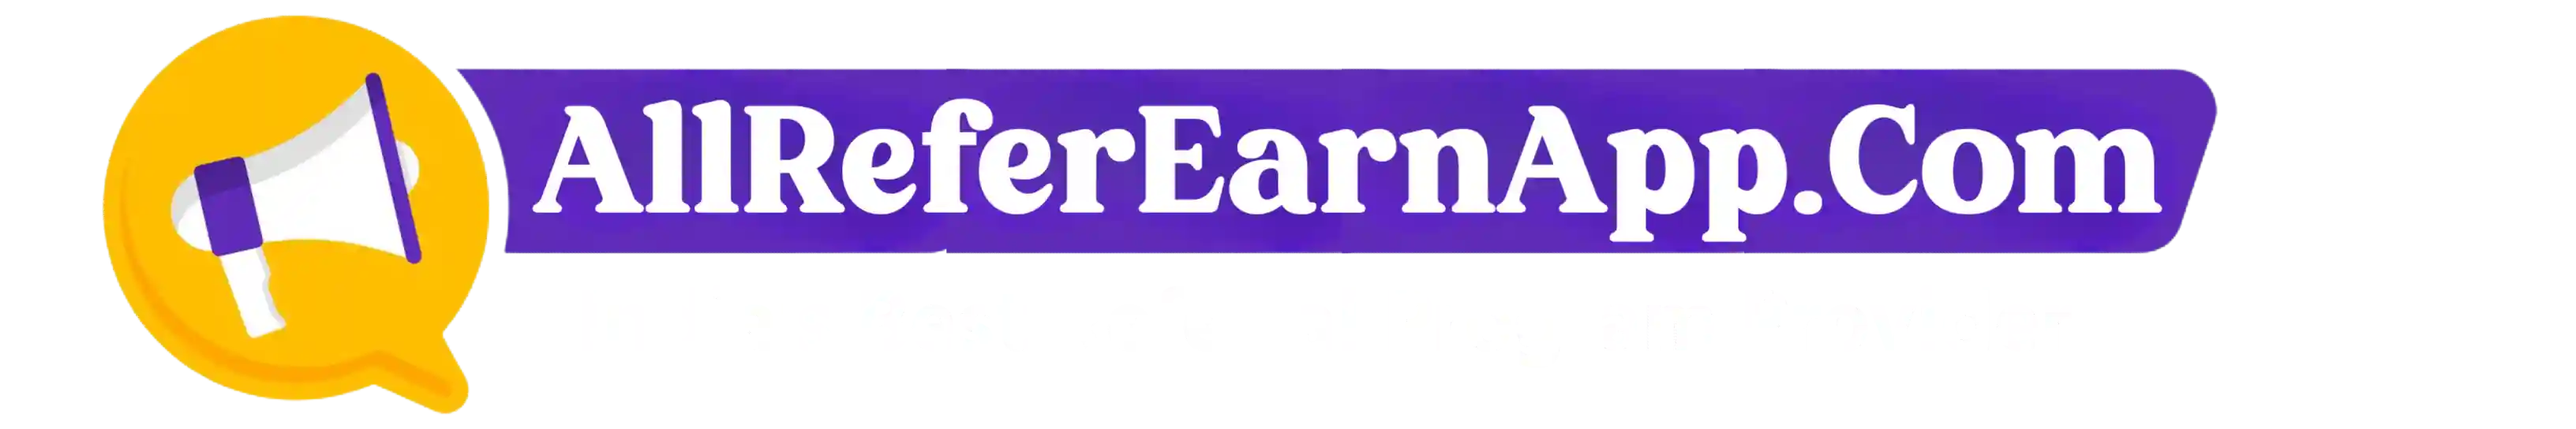 All Refer Earn App Logo